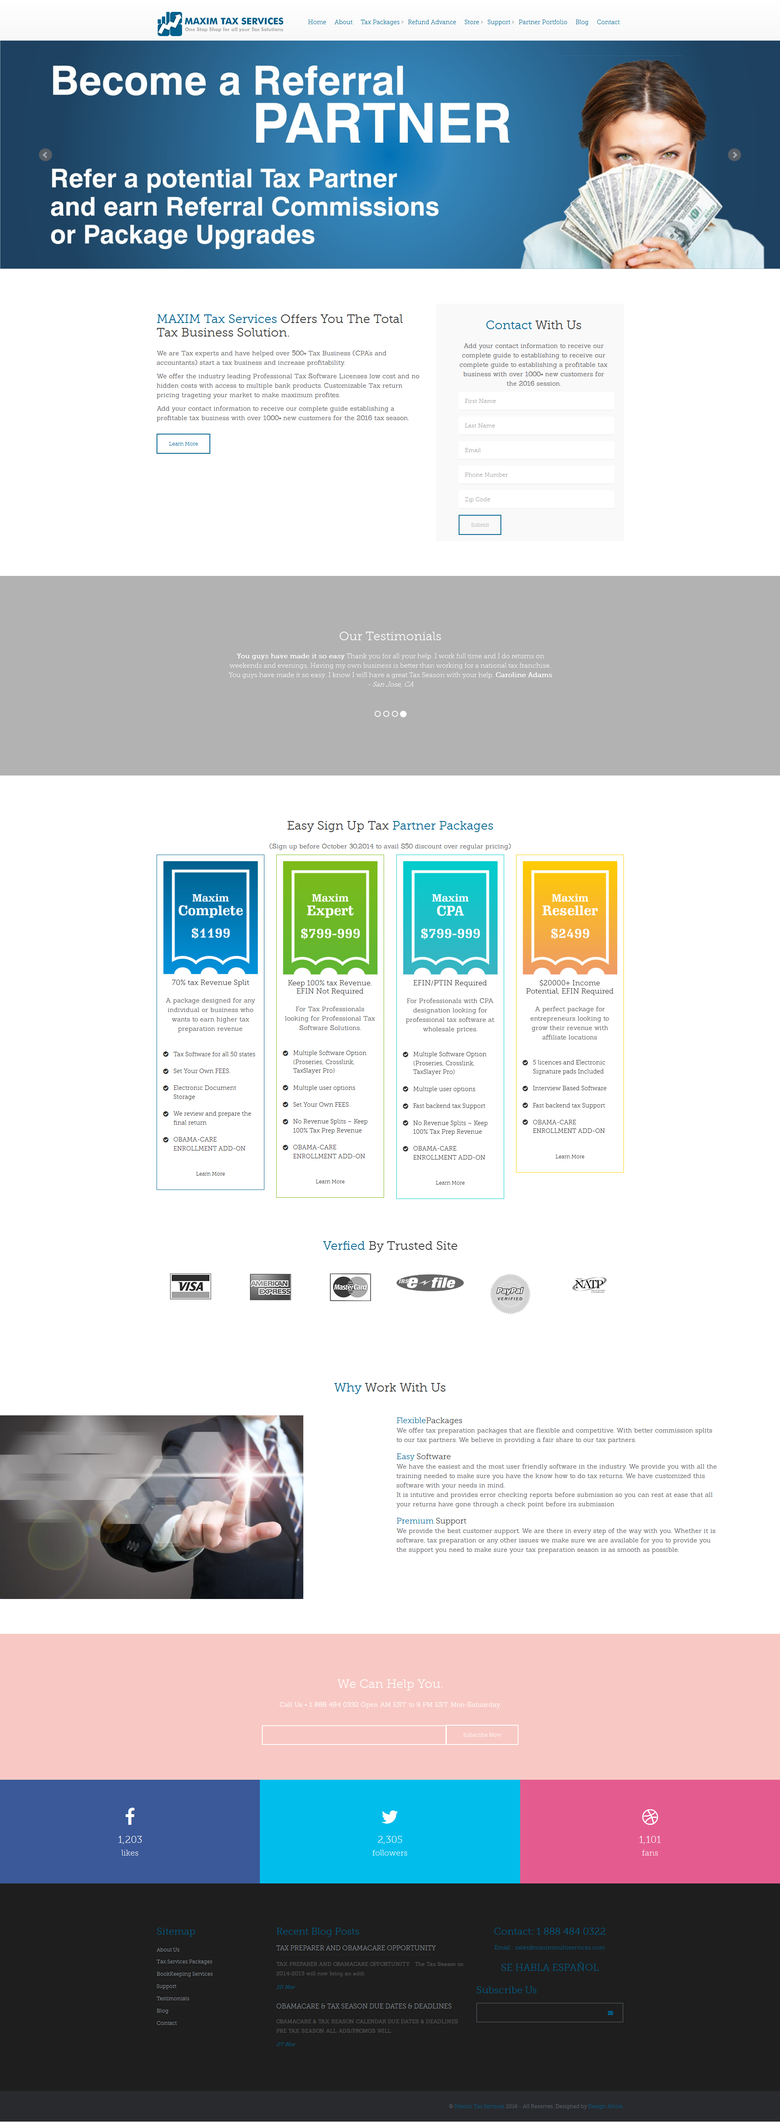 Maximtaxsoftware Website Design & Developing